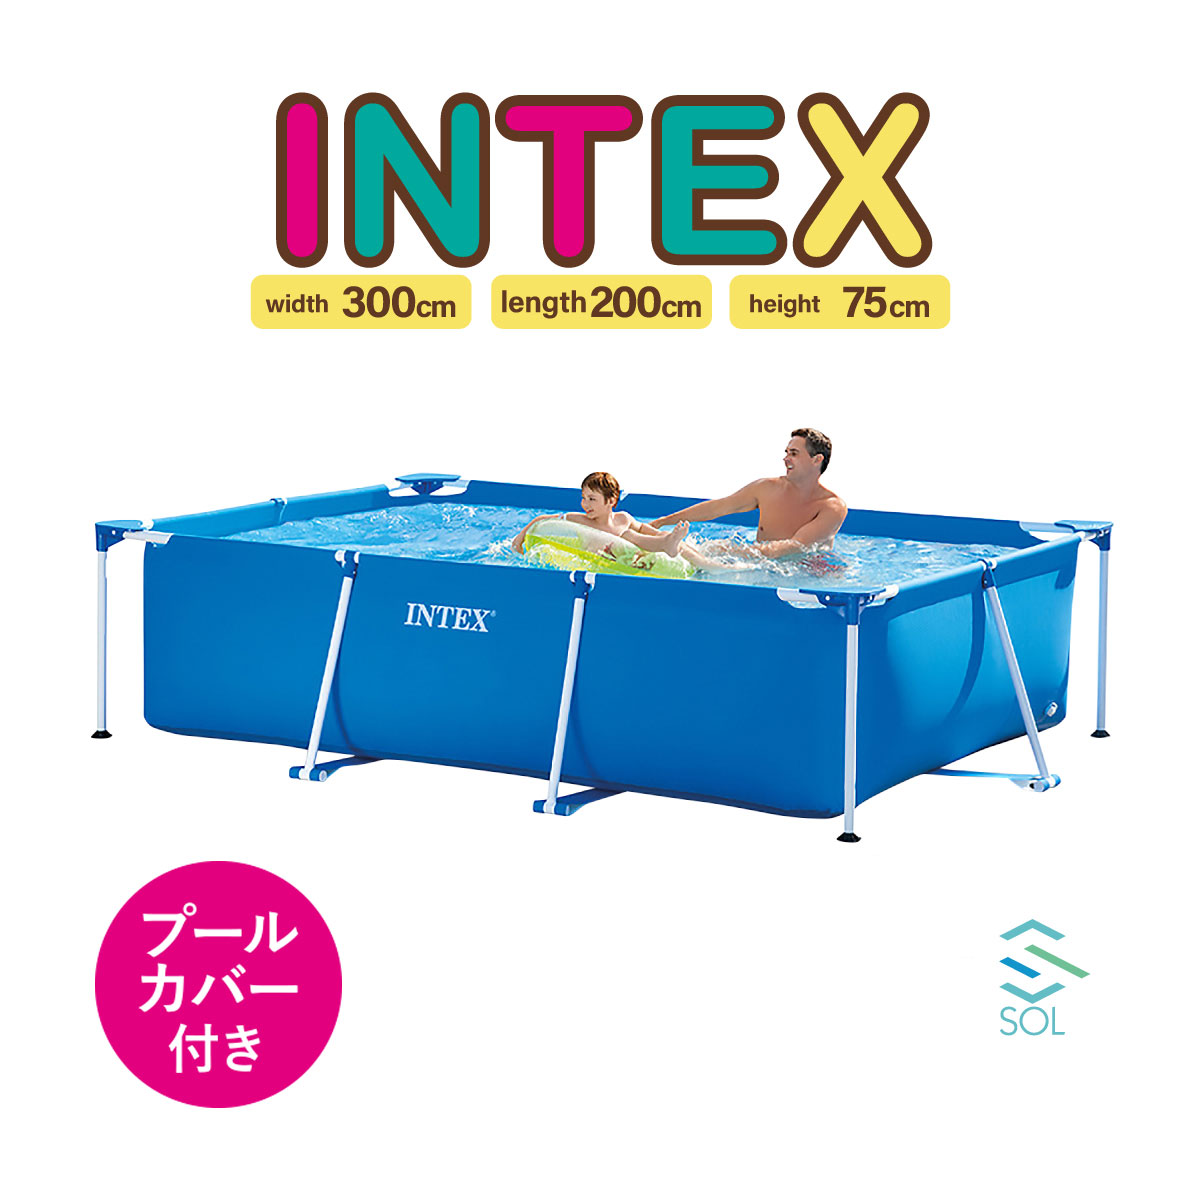 正規品 INTEX(インテックス) レクタングラフレームプール 特大家庭用プール 300cmX200cmX75cm ブルーシートカバー 床敷き付き